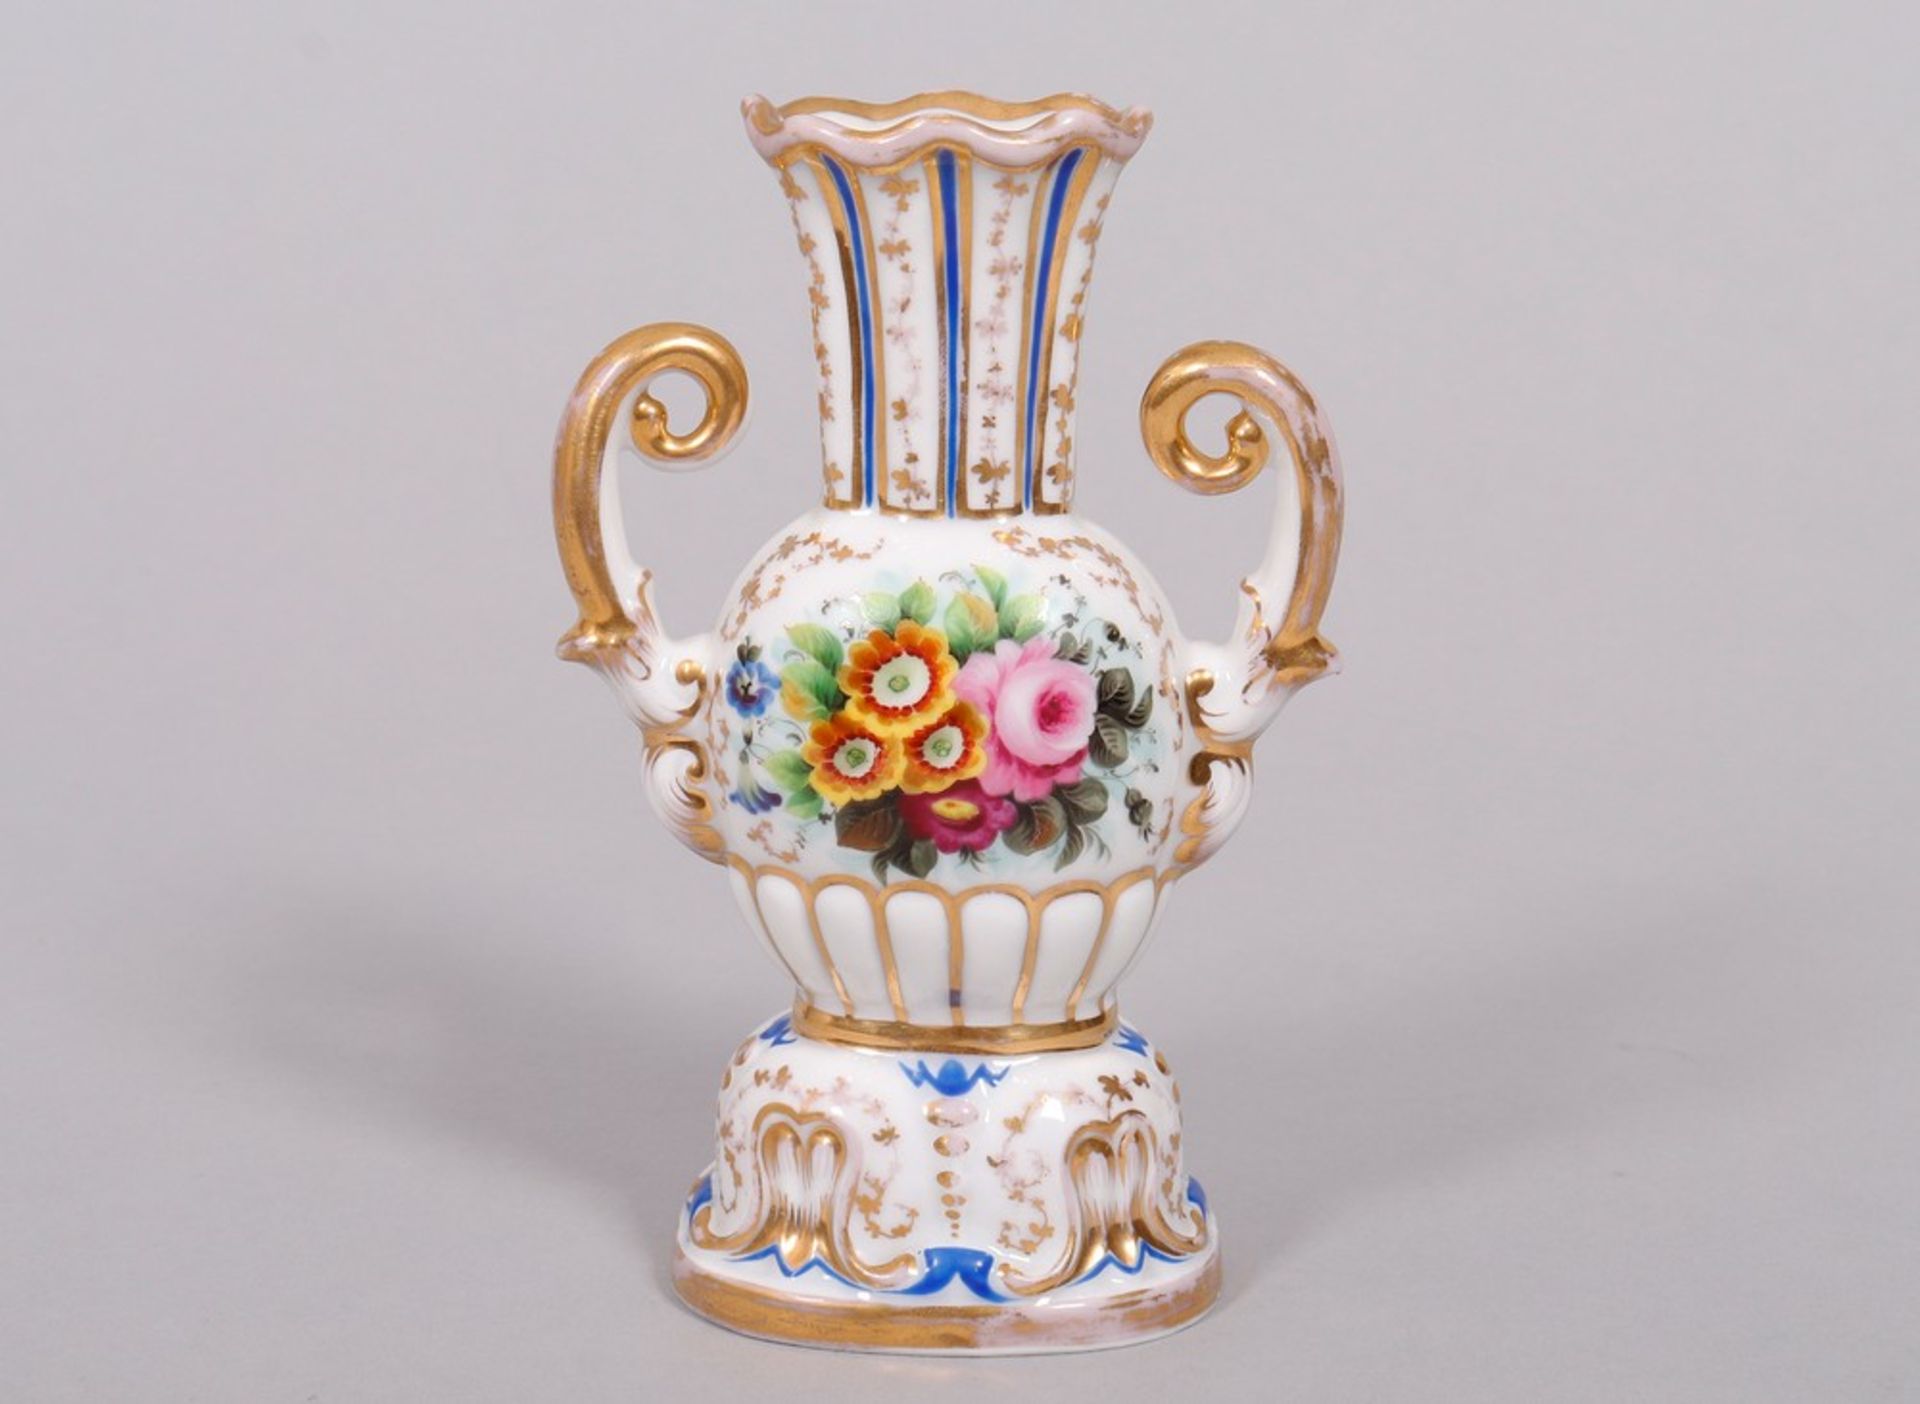 Small Biedermeier vase, probably Sèvres, c. 1837